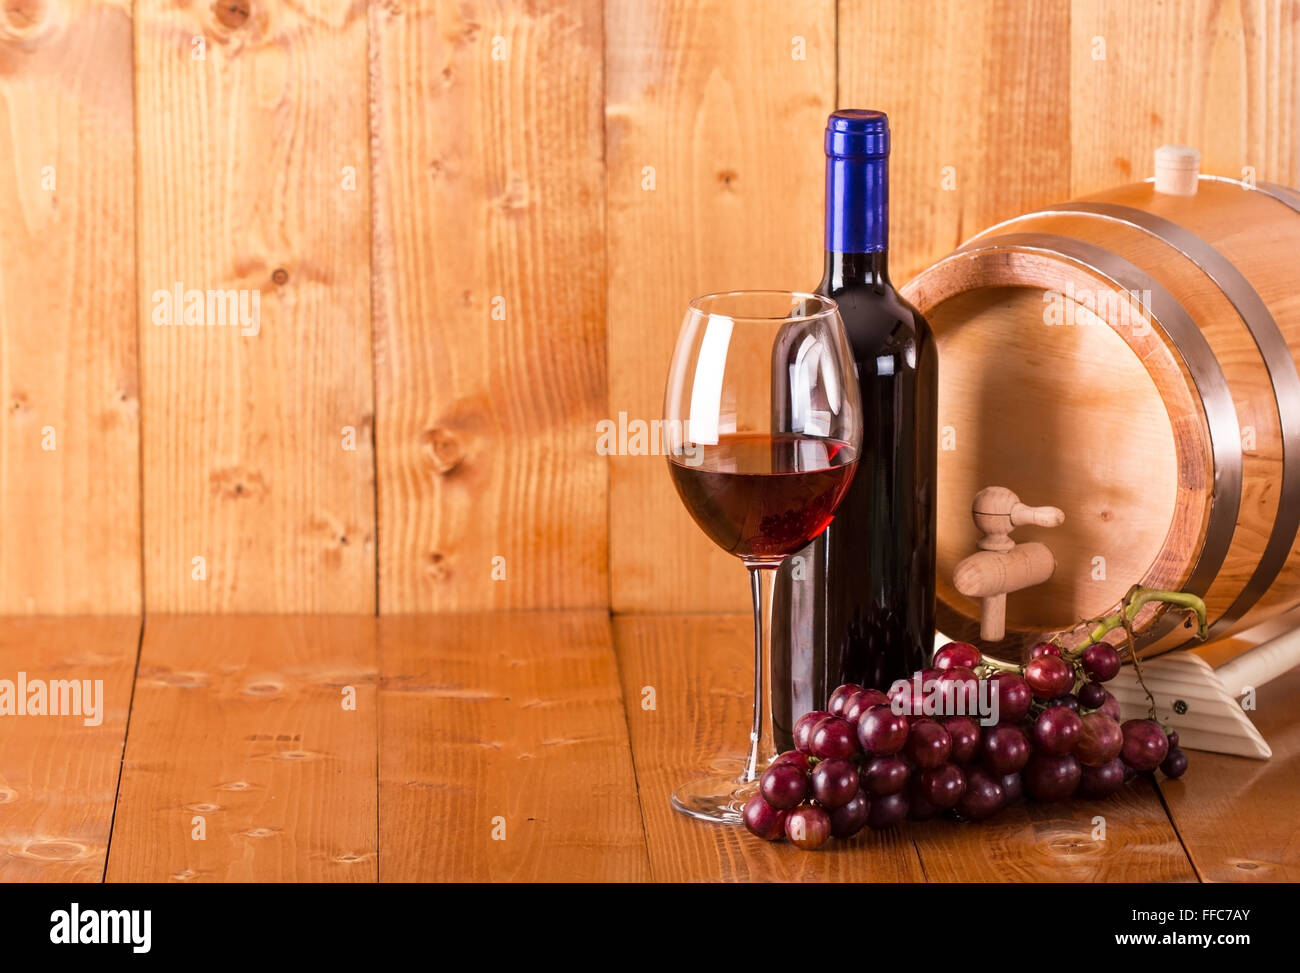 Verre de vin rouge bouteille baril et raisins sur fond de bois Banque D'Images